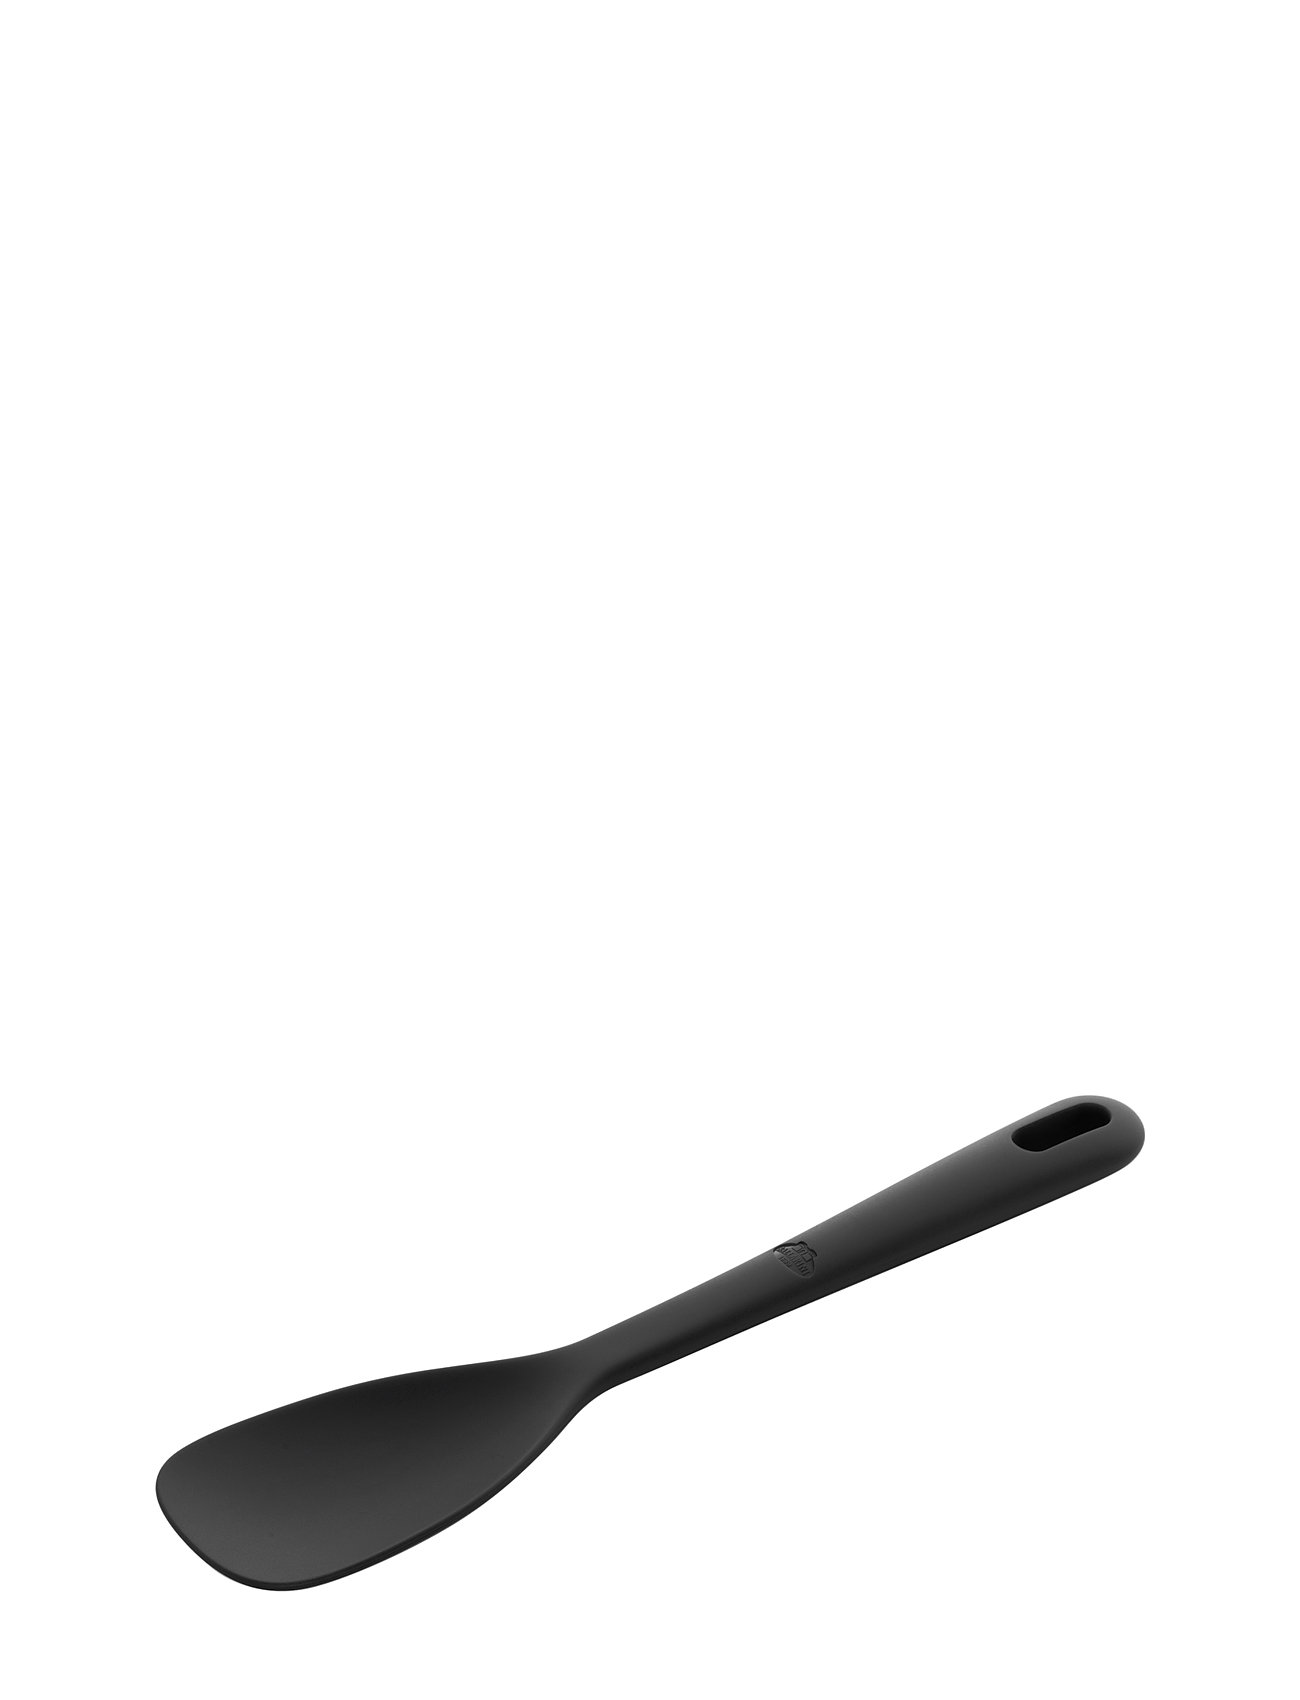 BALLARINI Nero Silicone Cooking Spoon, 1 unit - Foods Co.